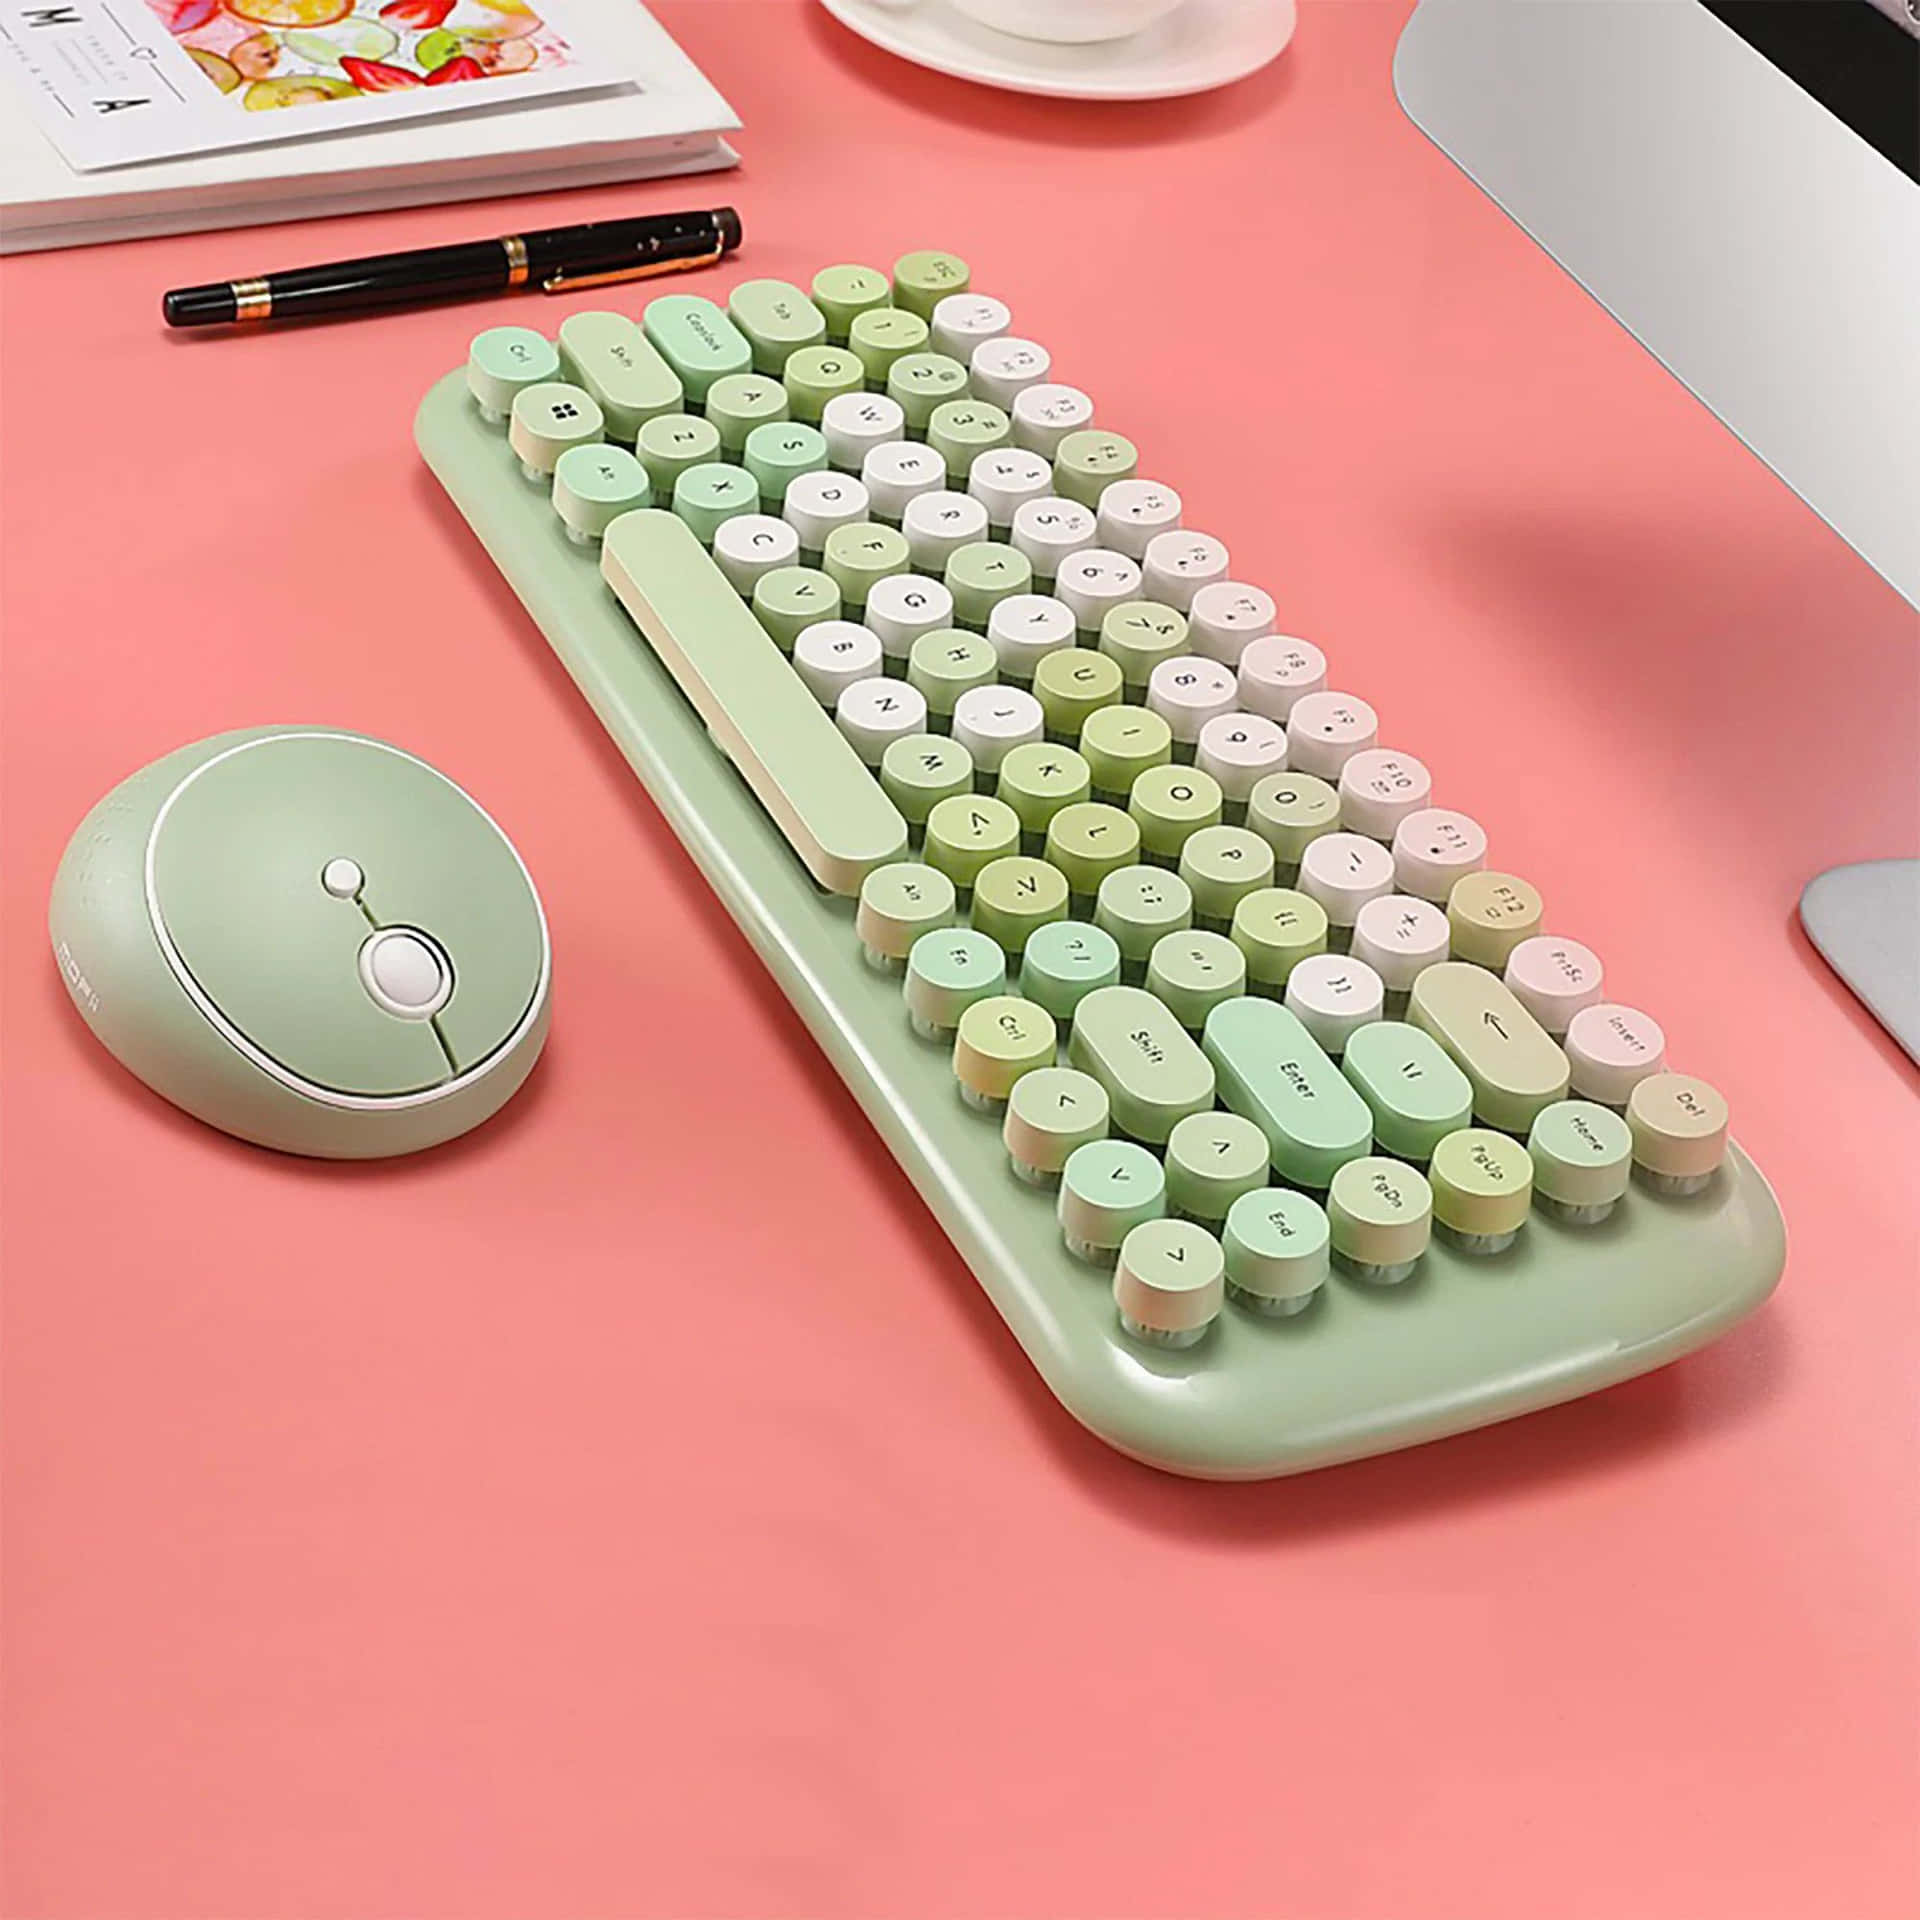 Etgrønt Tastatur Og En Mus På En Pink Skrivebord.